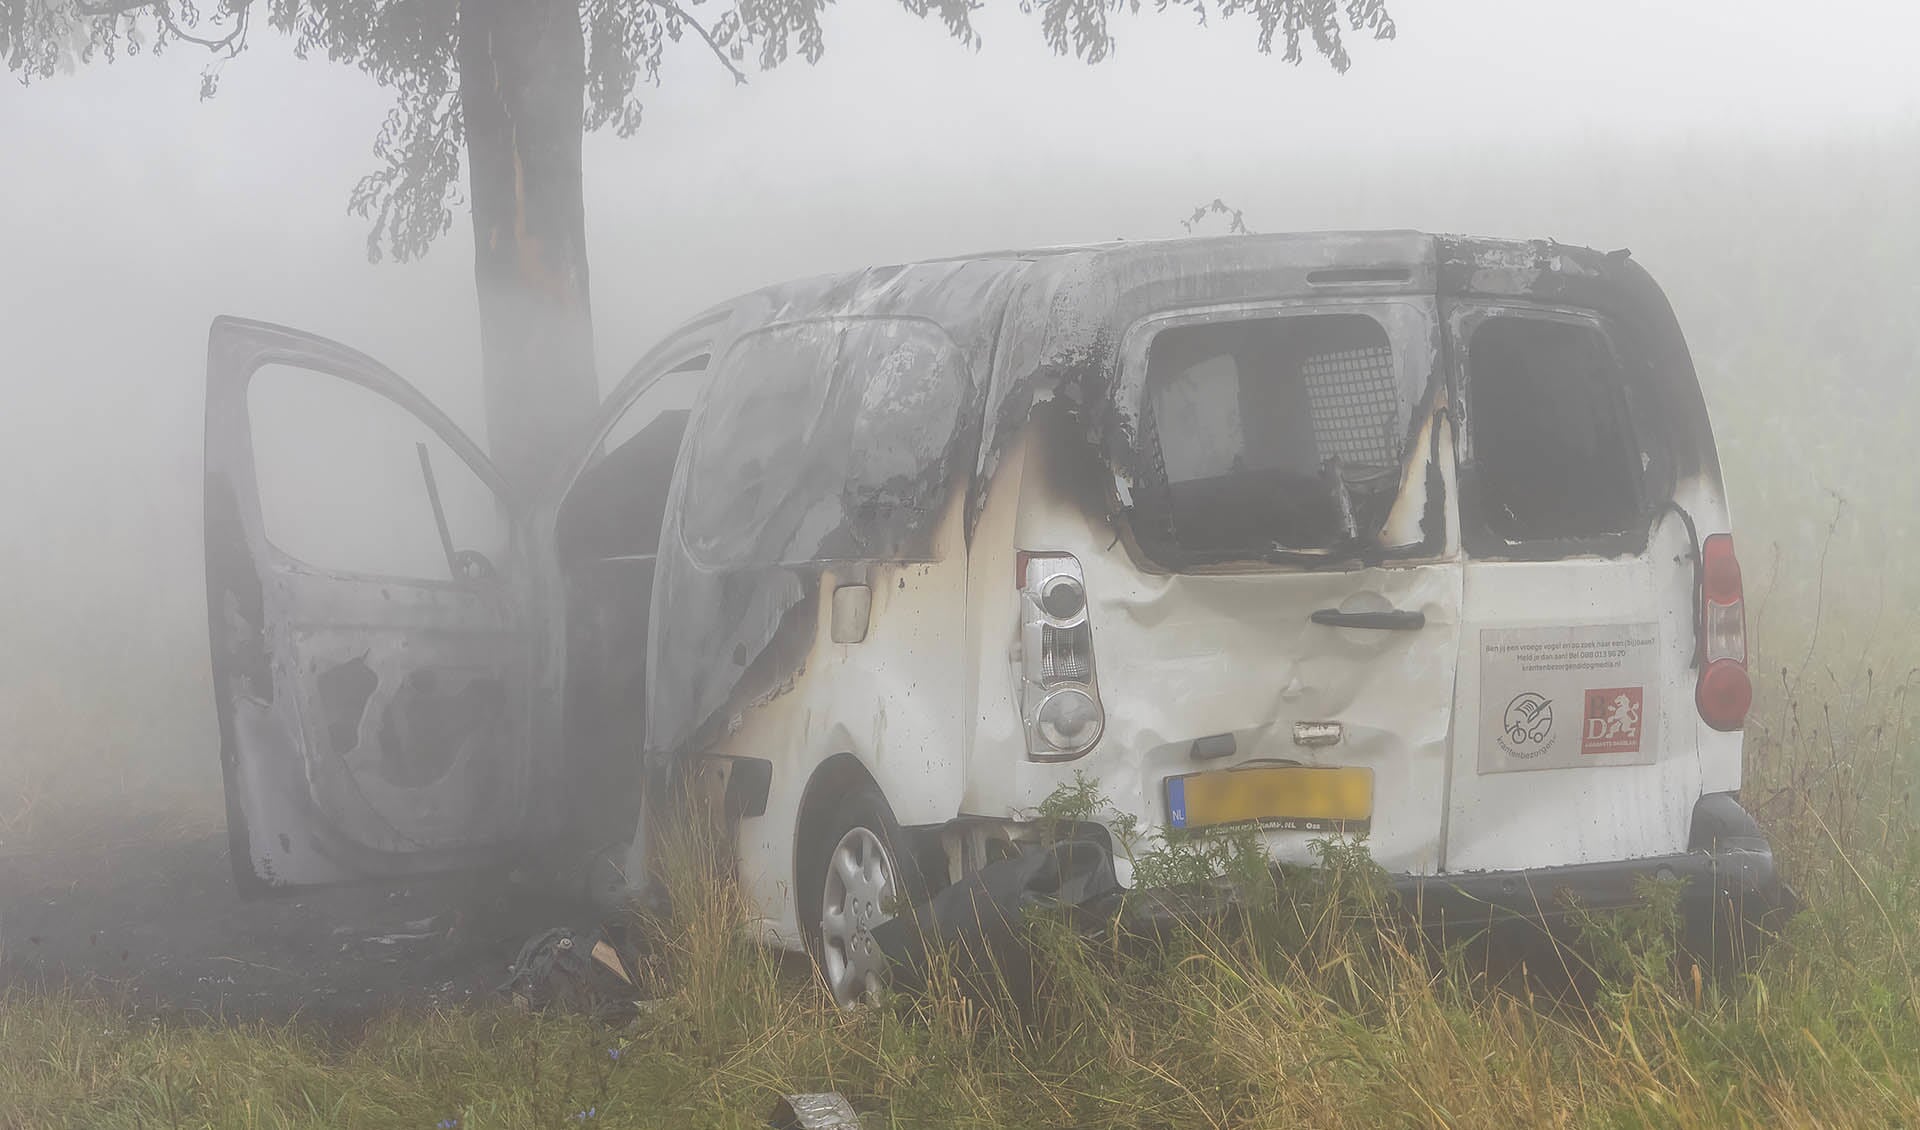 Ongeval 3 voertuigen met brand zeer dichte mist N329 Oss